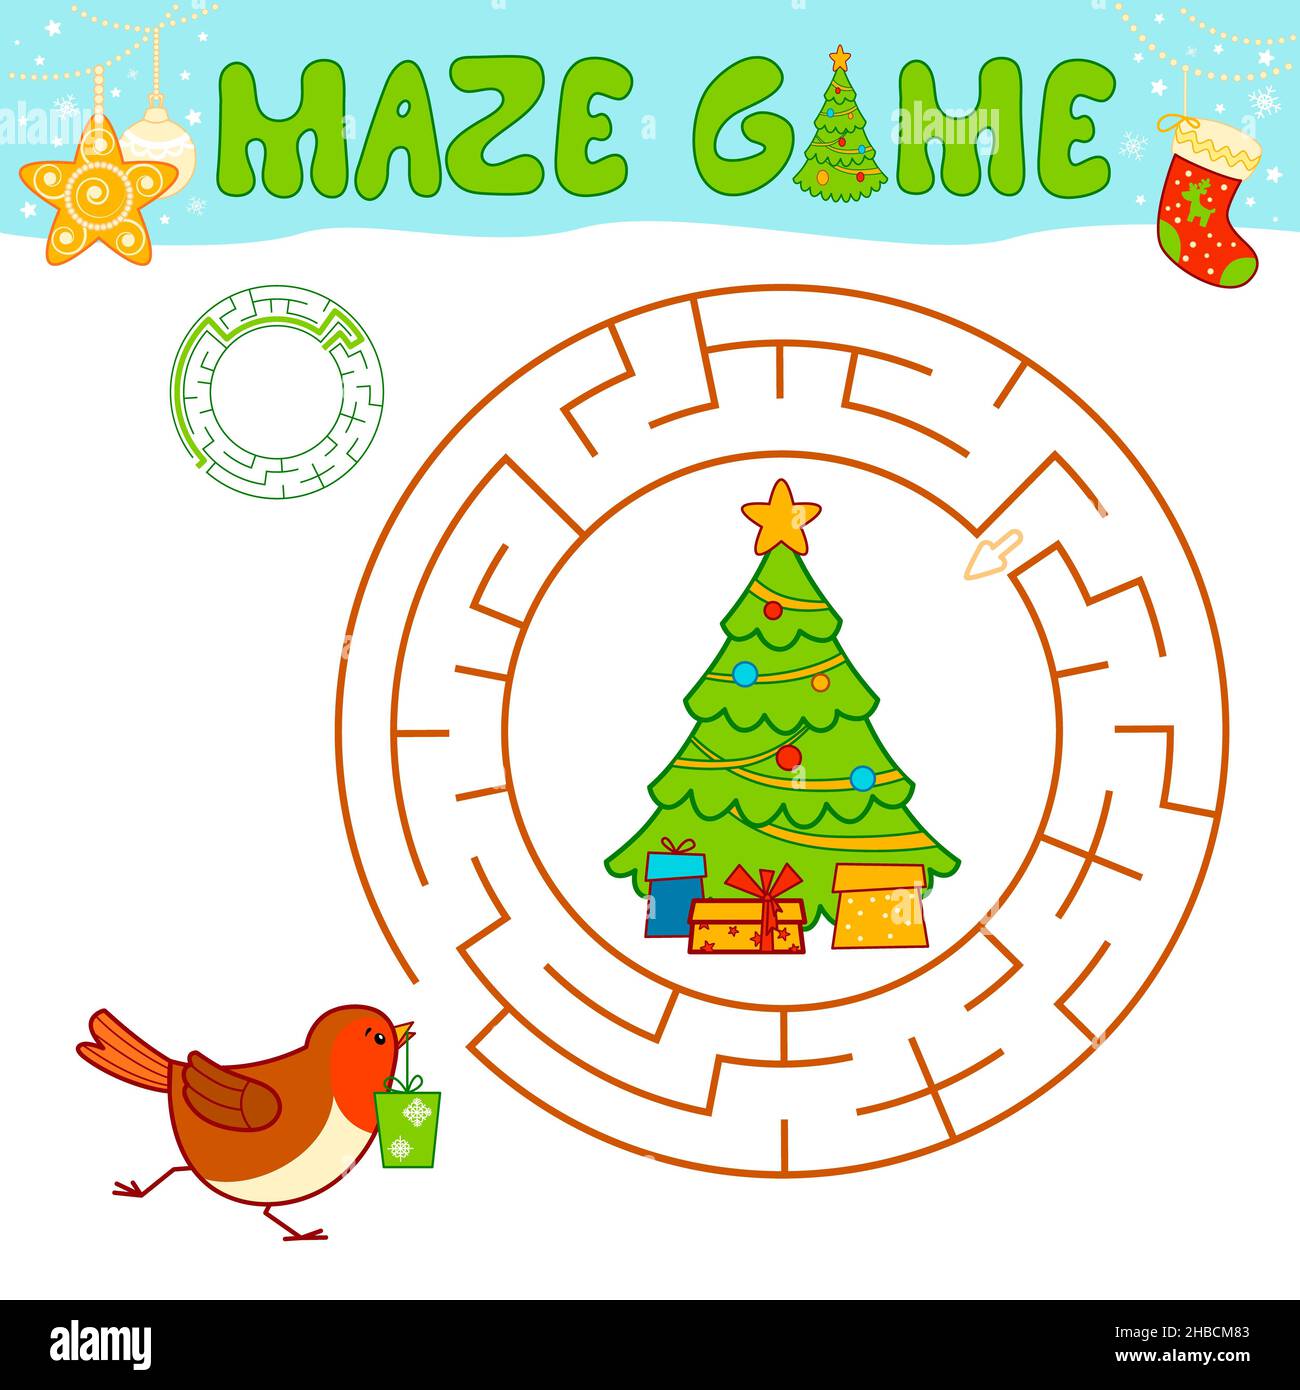 Weihnachten Labyrinth Puzzle-Spiel für Kinder. Kreis Labyrinth oder Labyrinth-Spiel mit Christmas Bird. Stockfoto